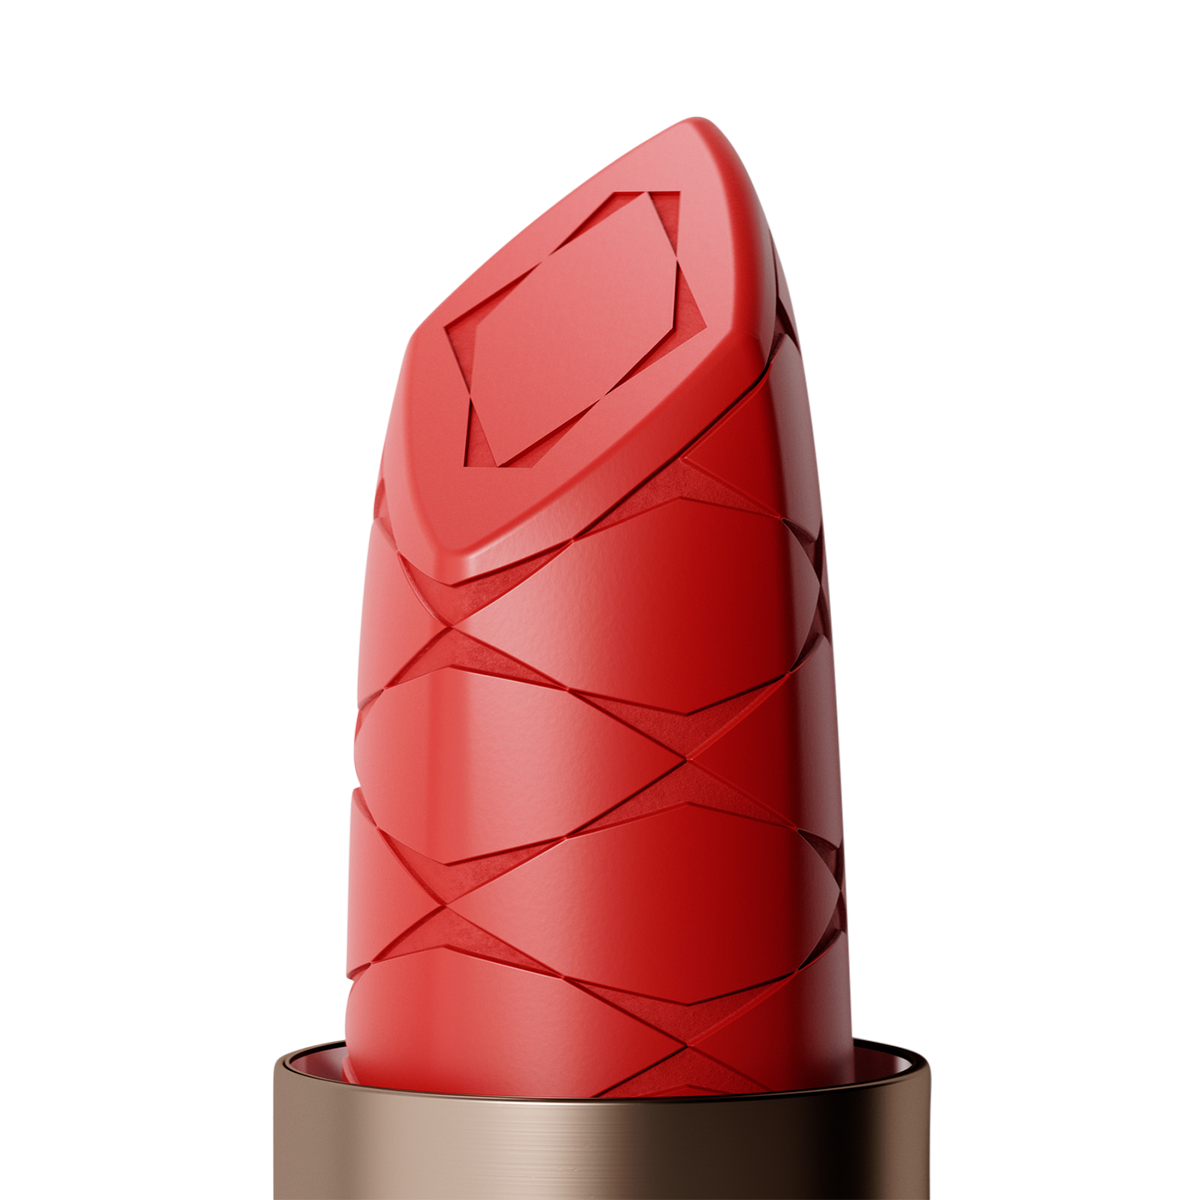 Alûstre - The Original Lipstick